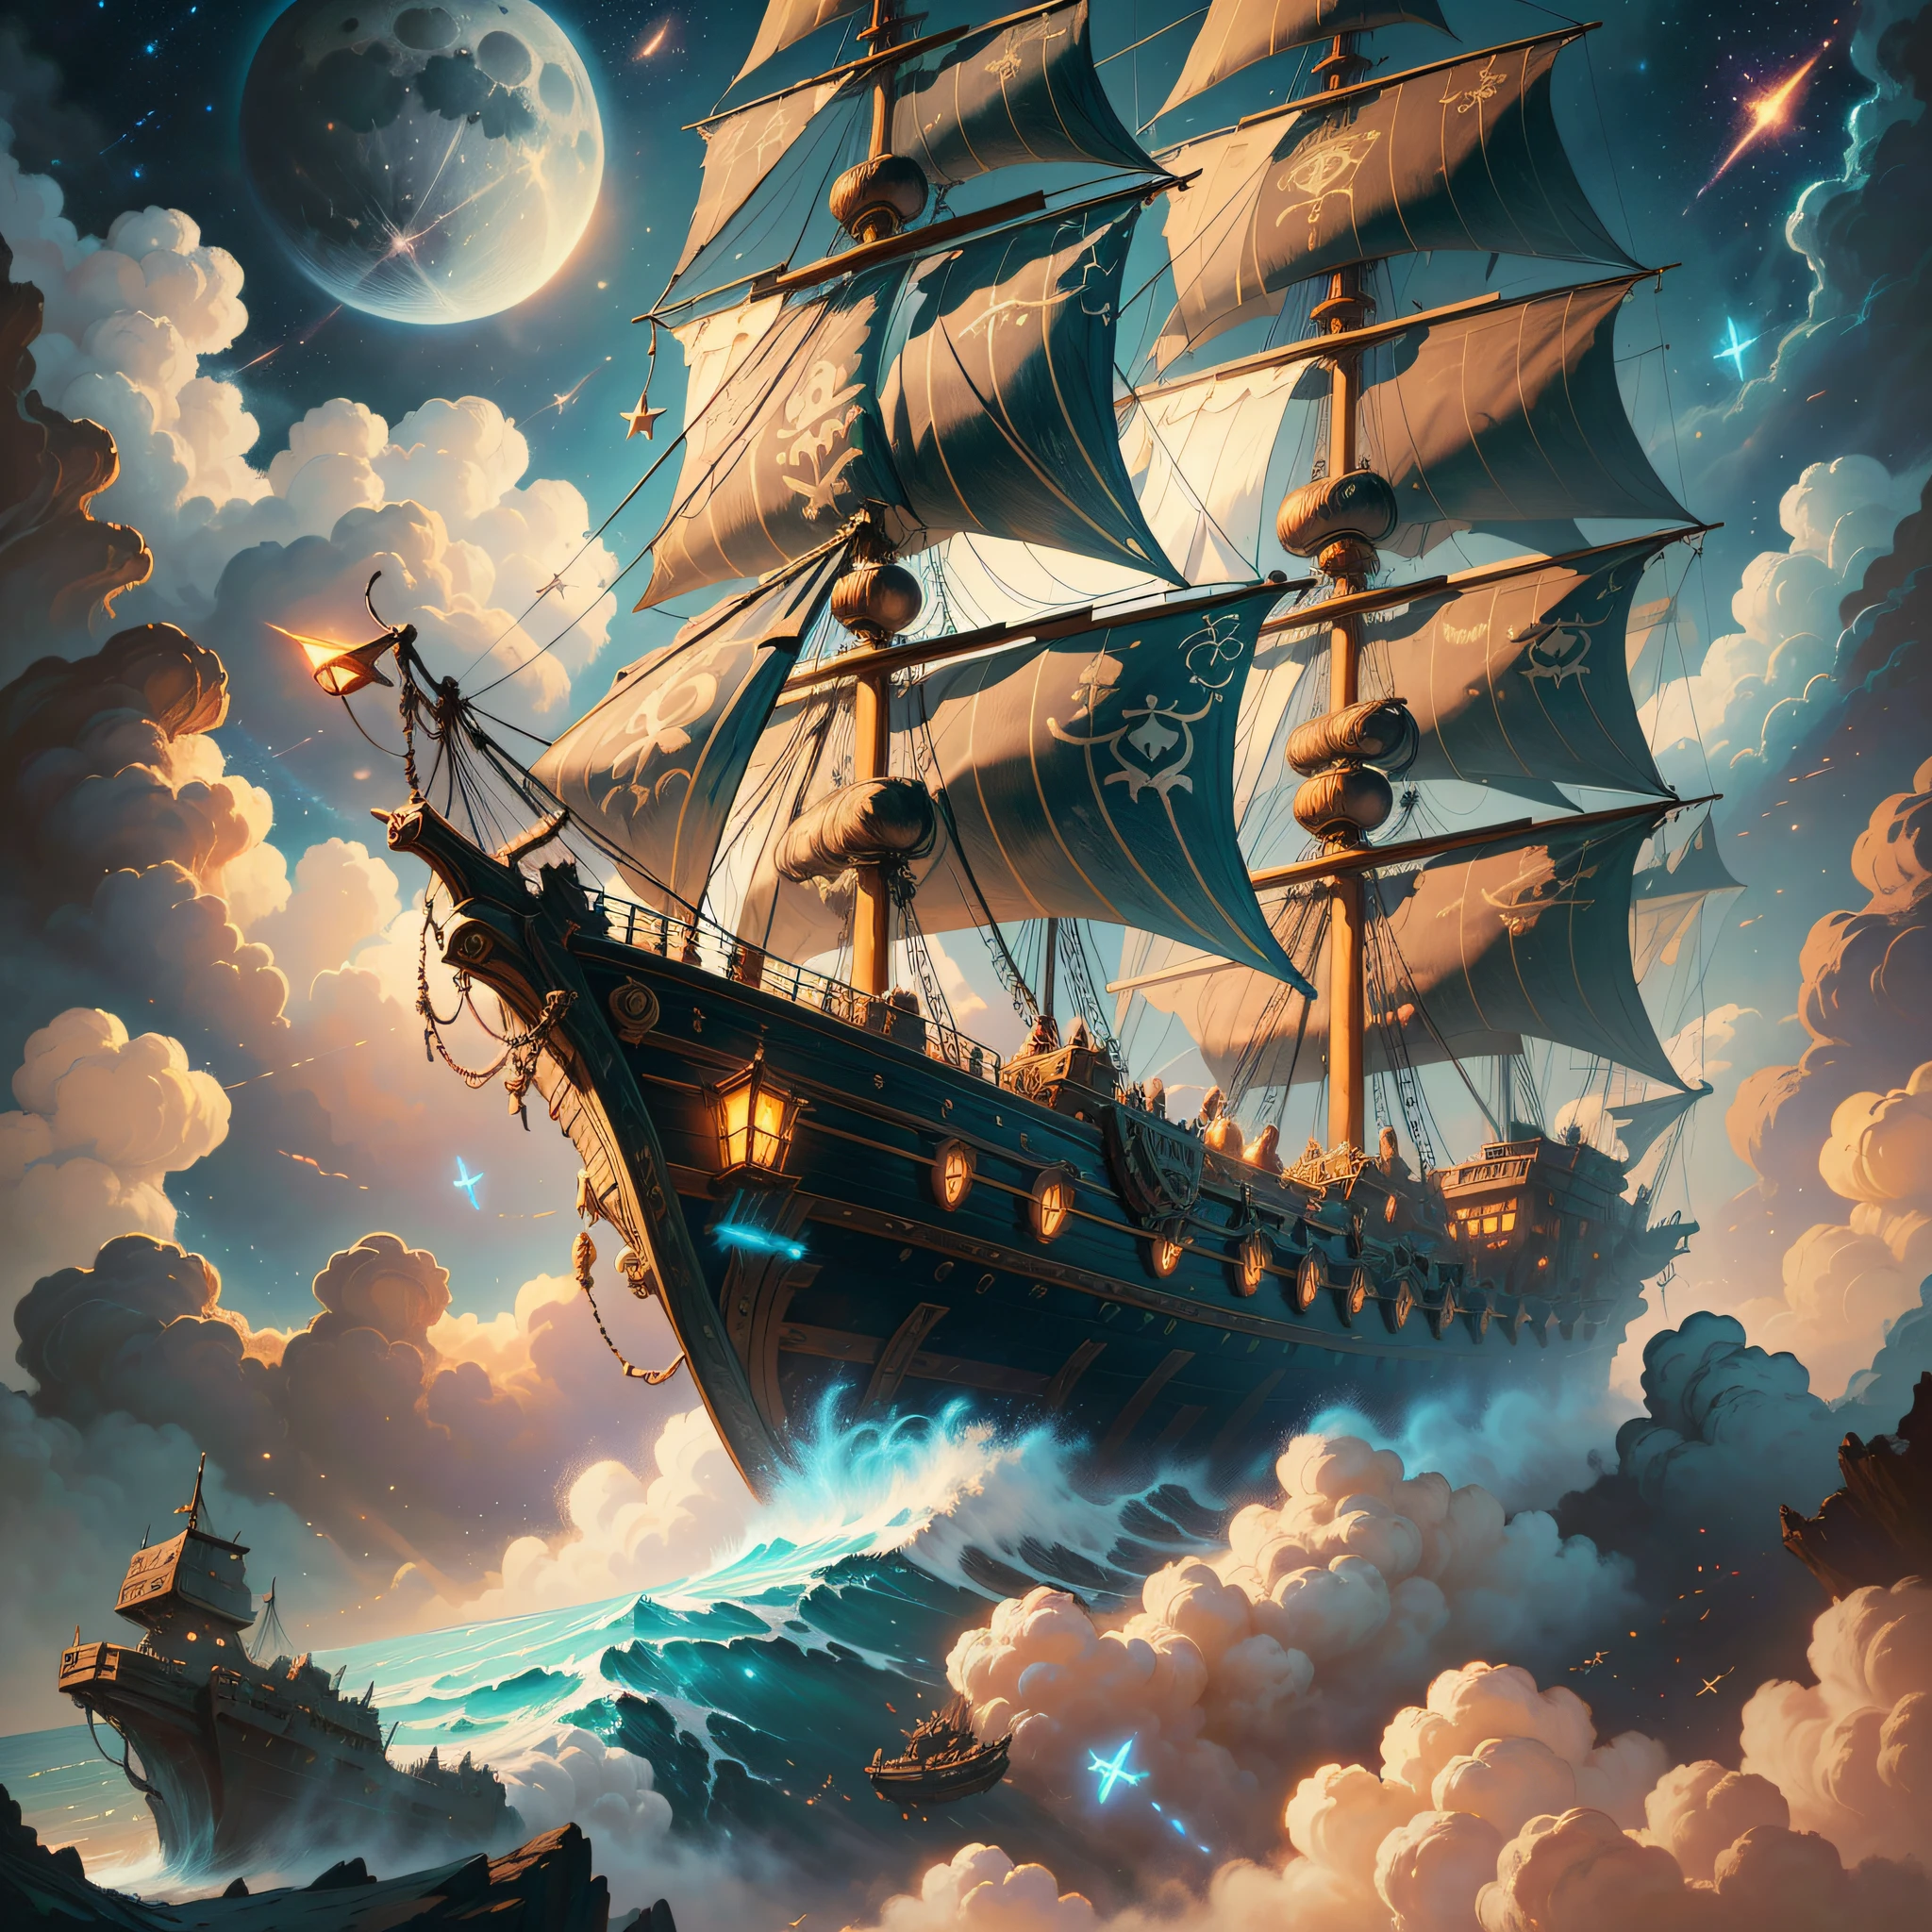 飛天海盜船被小仙女包圍的畫, 雲, 月亮, 背景中的星星, 幻想, 高度細緻的 4K 數位藝術, 8k 高品質細節藝術, 西里爾·羅蘭多的風格, detailed 幻想 digital art, epic 幻想 science fiction illustration, 驚人的壁紙, 靈感來自 Gaston Bussiere --auto --s2